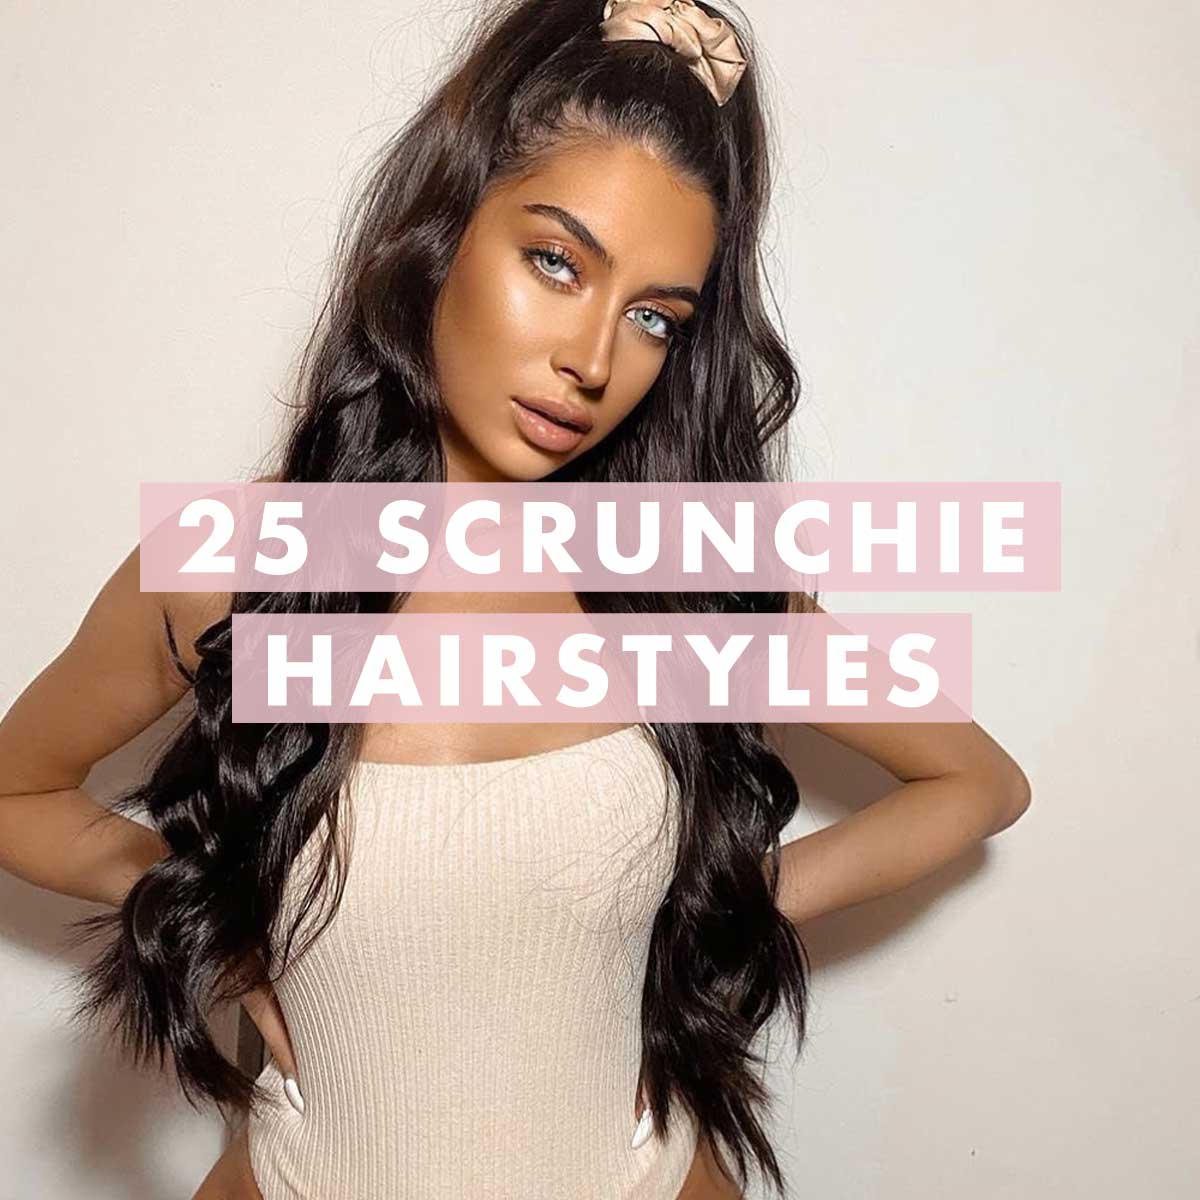 Scrunchie hairstyles